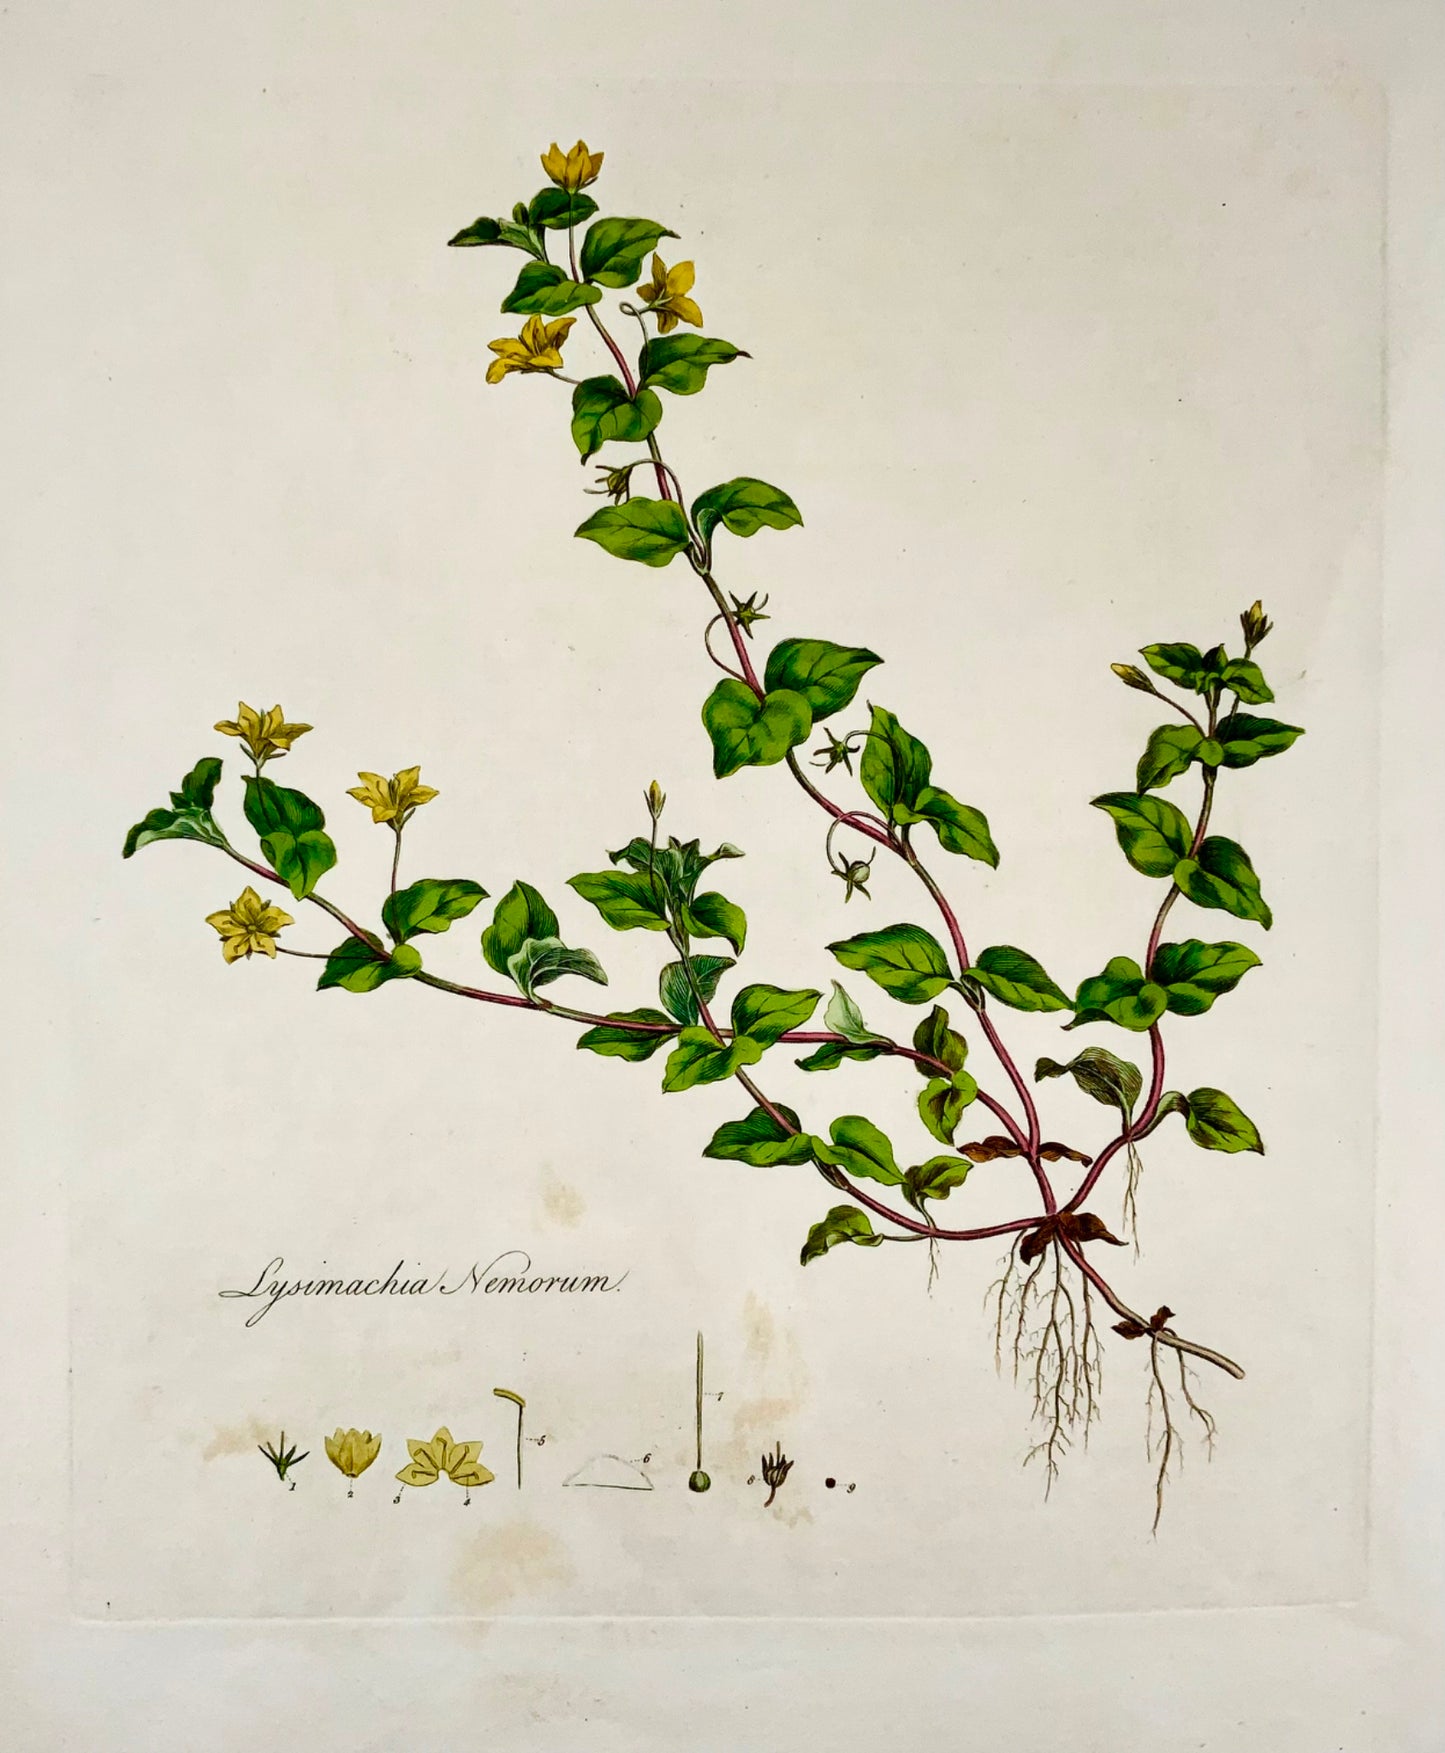 1817 Curtis, 'Flora Londinensis', Pimpernel, foglio grande, colorato a mano, botanica